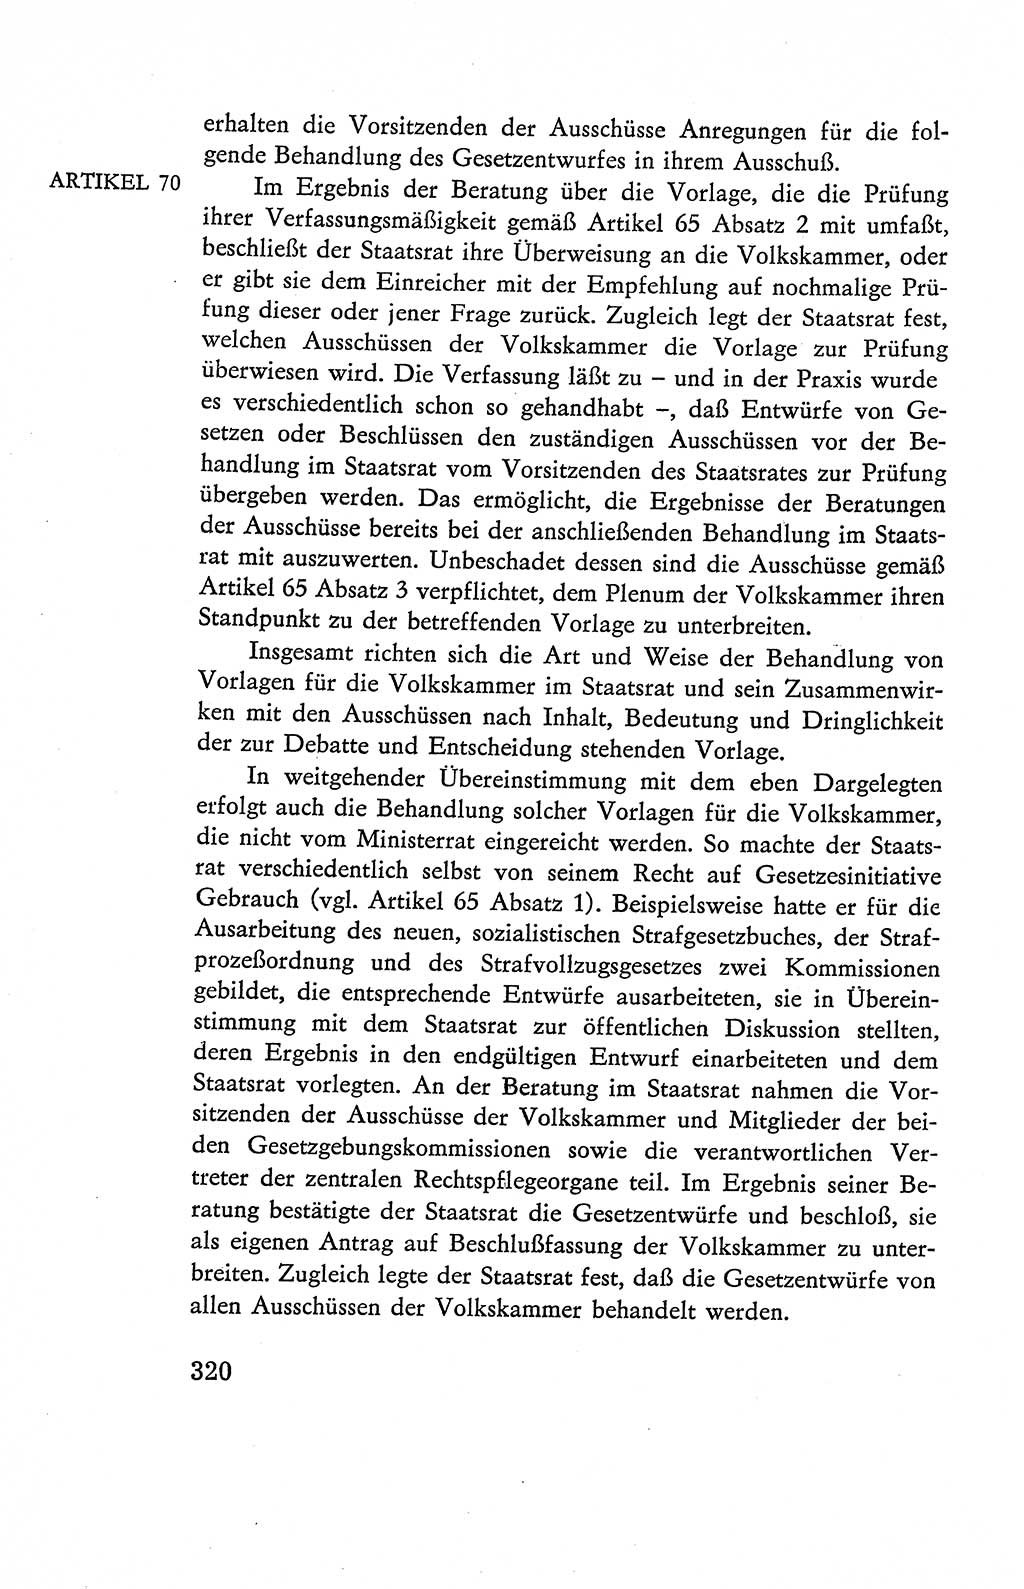 Verfassung der Deutschen Demokratischen Republik (DDR), Dokumente, Kommentar 1969, Band 2, Seite 320 (Verf. DDR Dok. Komm. 1969, Bd. 2, S. 320)